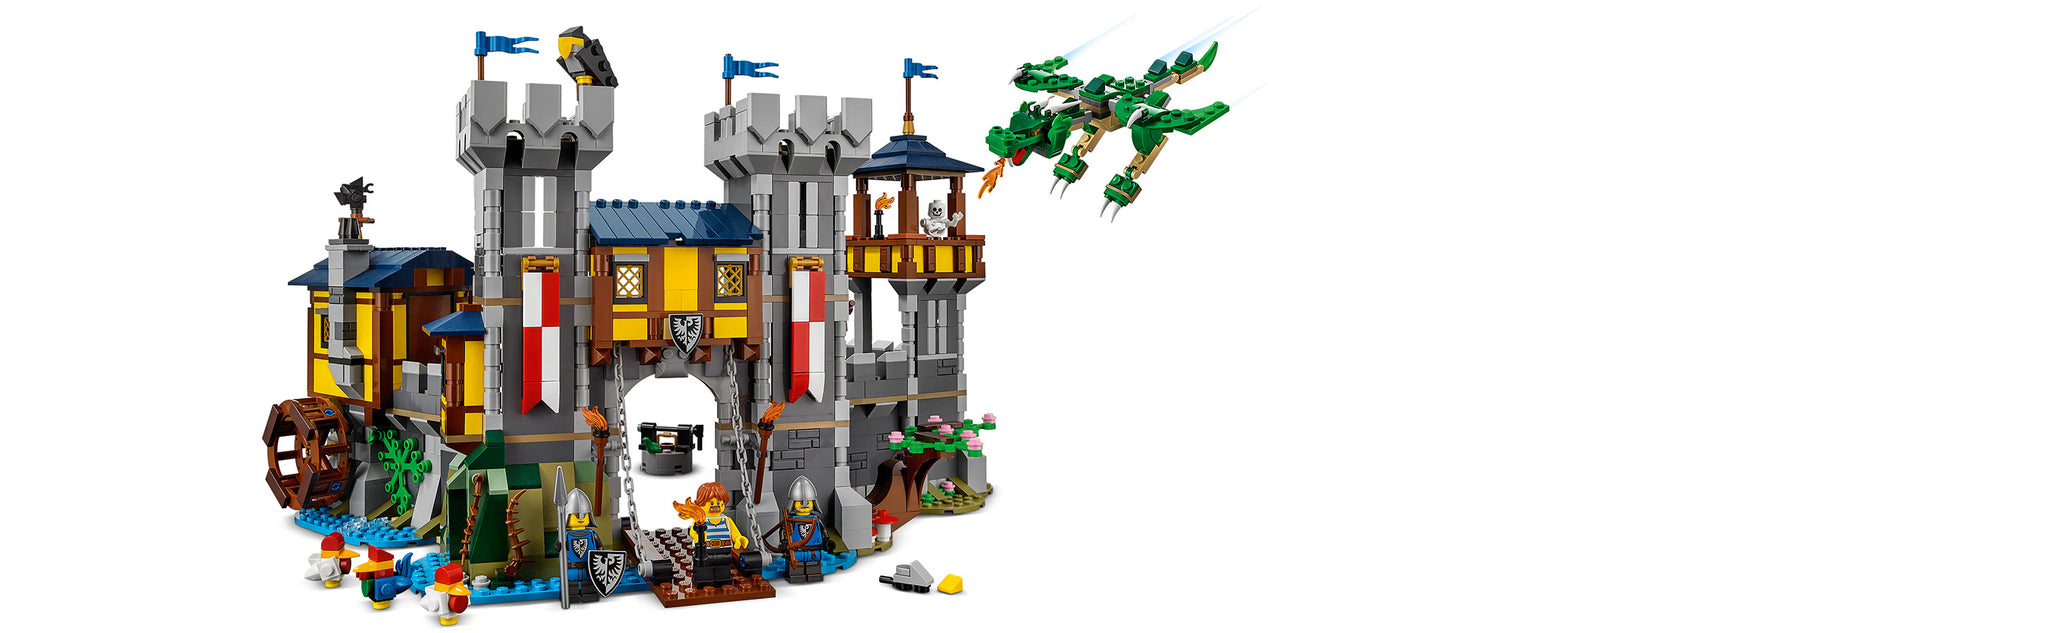 LEGO 31120 Medieval castle, castle tower or medieval market